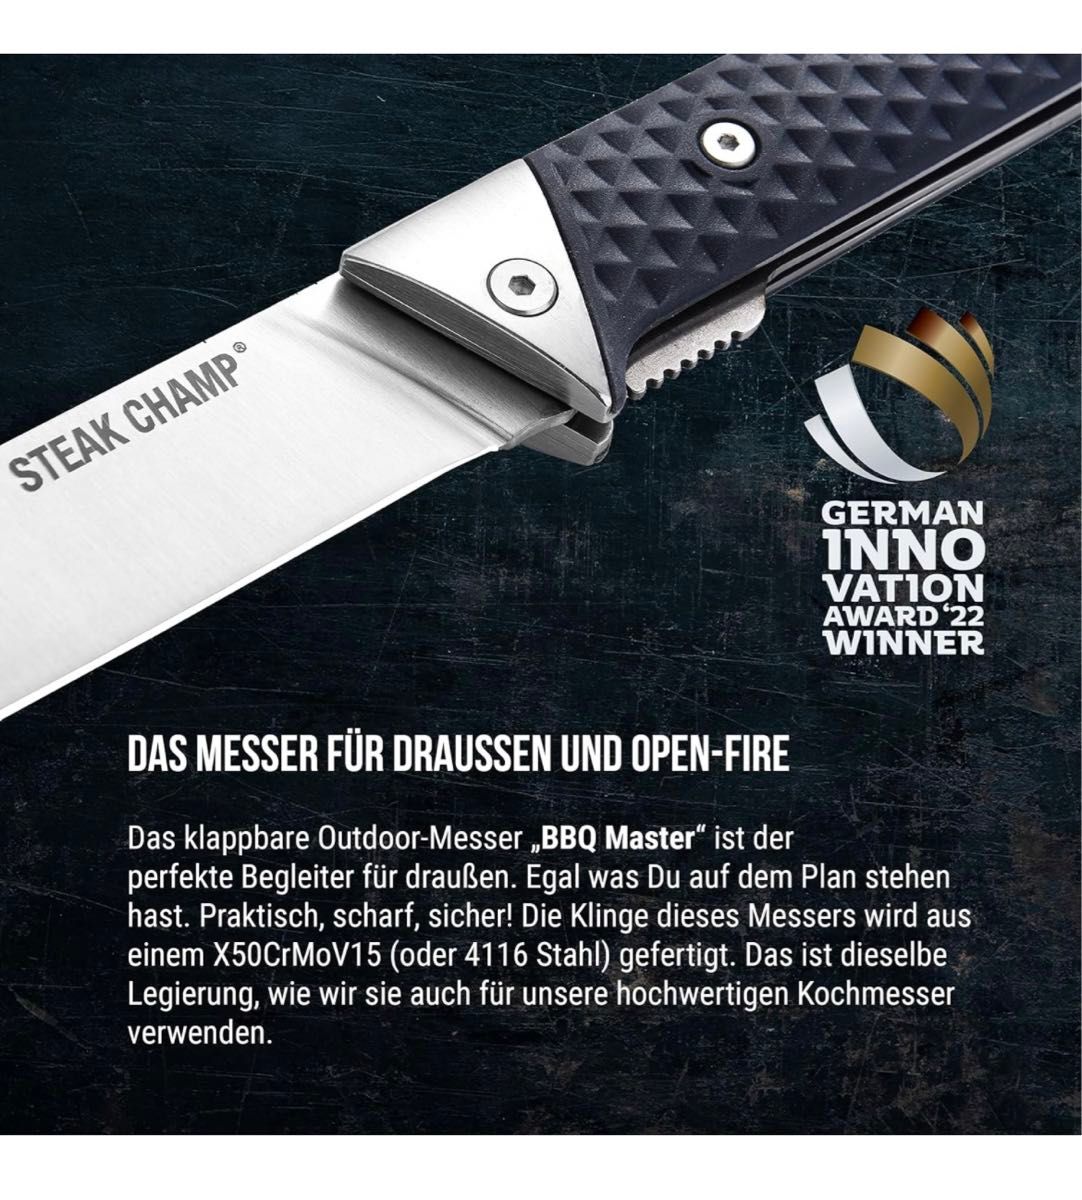 Steakchamp アウトドアフォールディングナイフ "BBQ MASTER" 折りたたみ式アウトドアナイフ 4.75インチ刃 